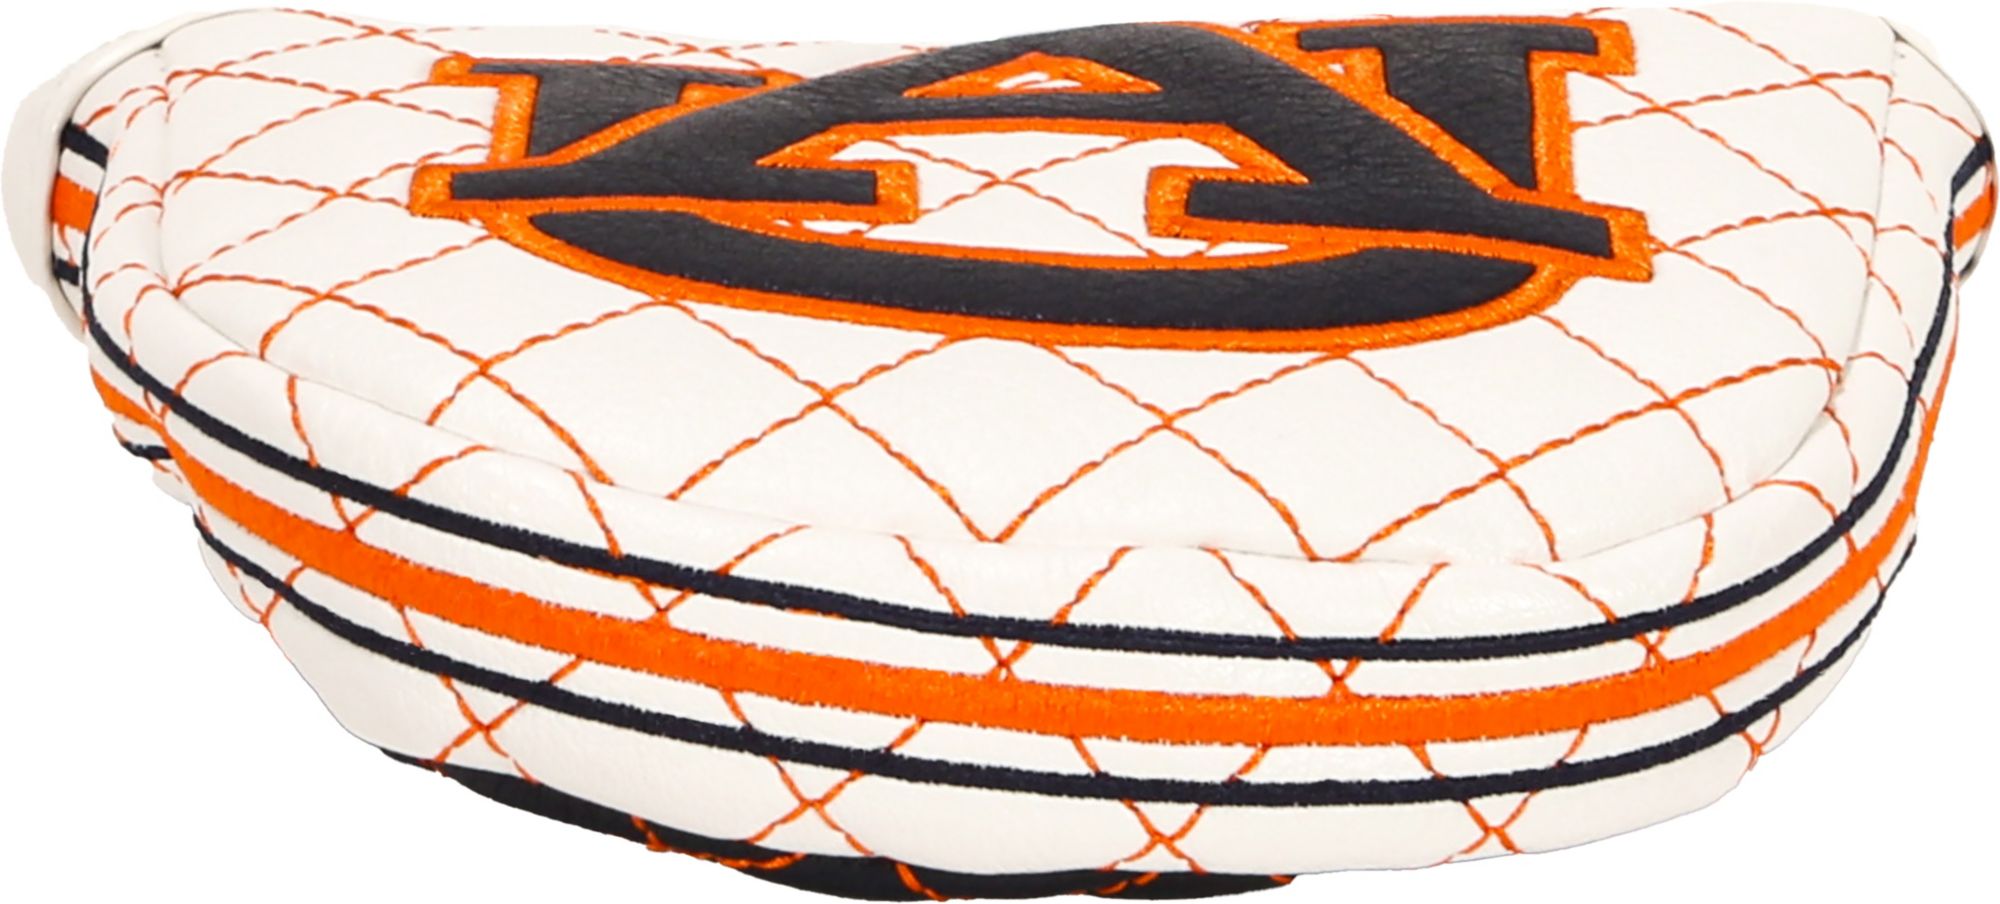 CMC Design Auburn Tigers Mallet Putter Headcover